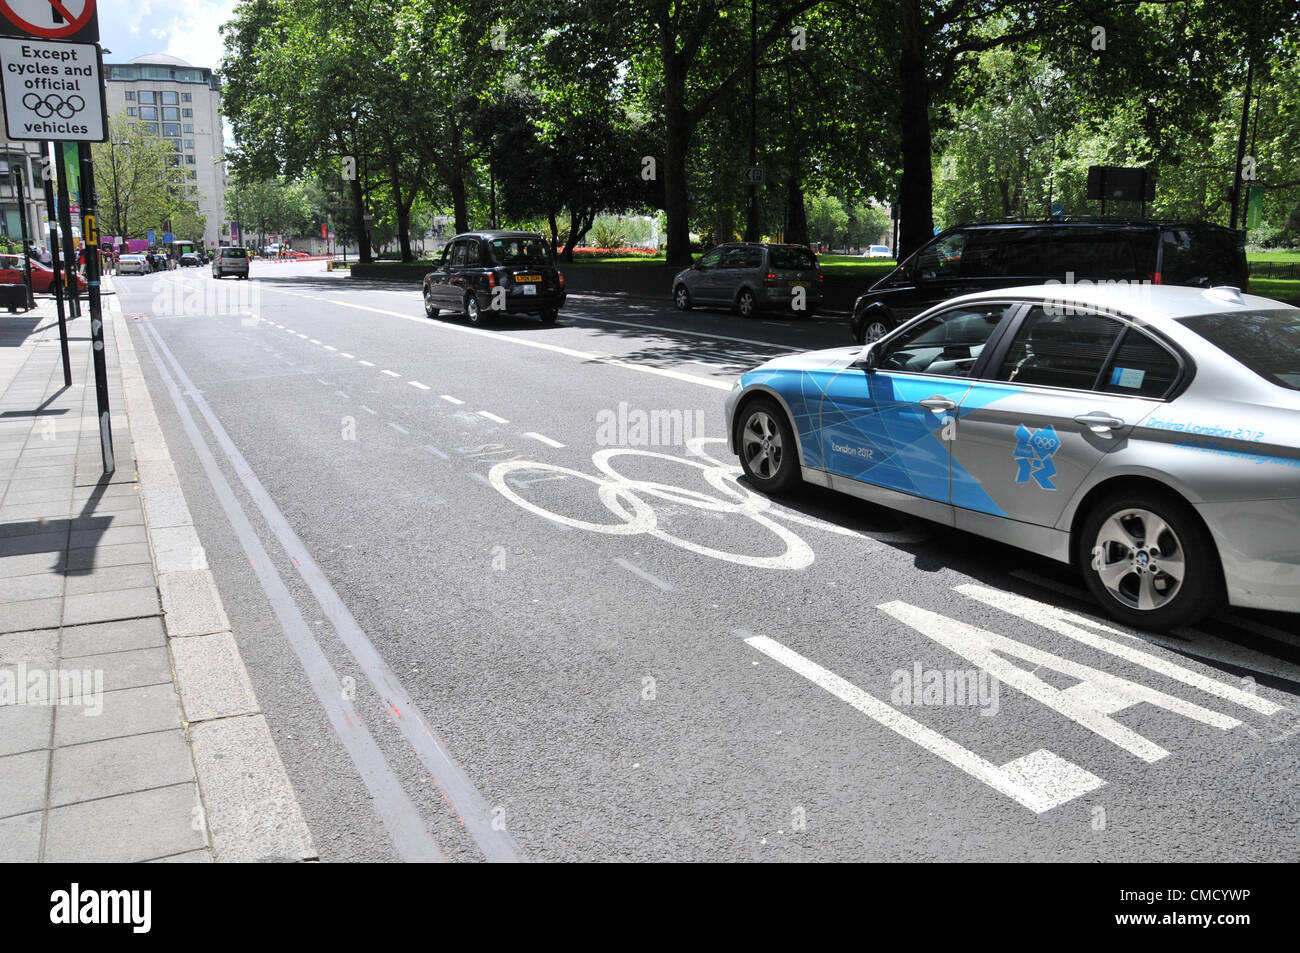 Park Lane, London, UK. 21. Juli 2012. Eine Limousine mit den London Olympics Games Logos verziert und eine Spiele-Spur als die Olympischen Spiele nähert sich ab. Stockfoto